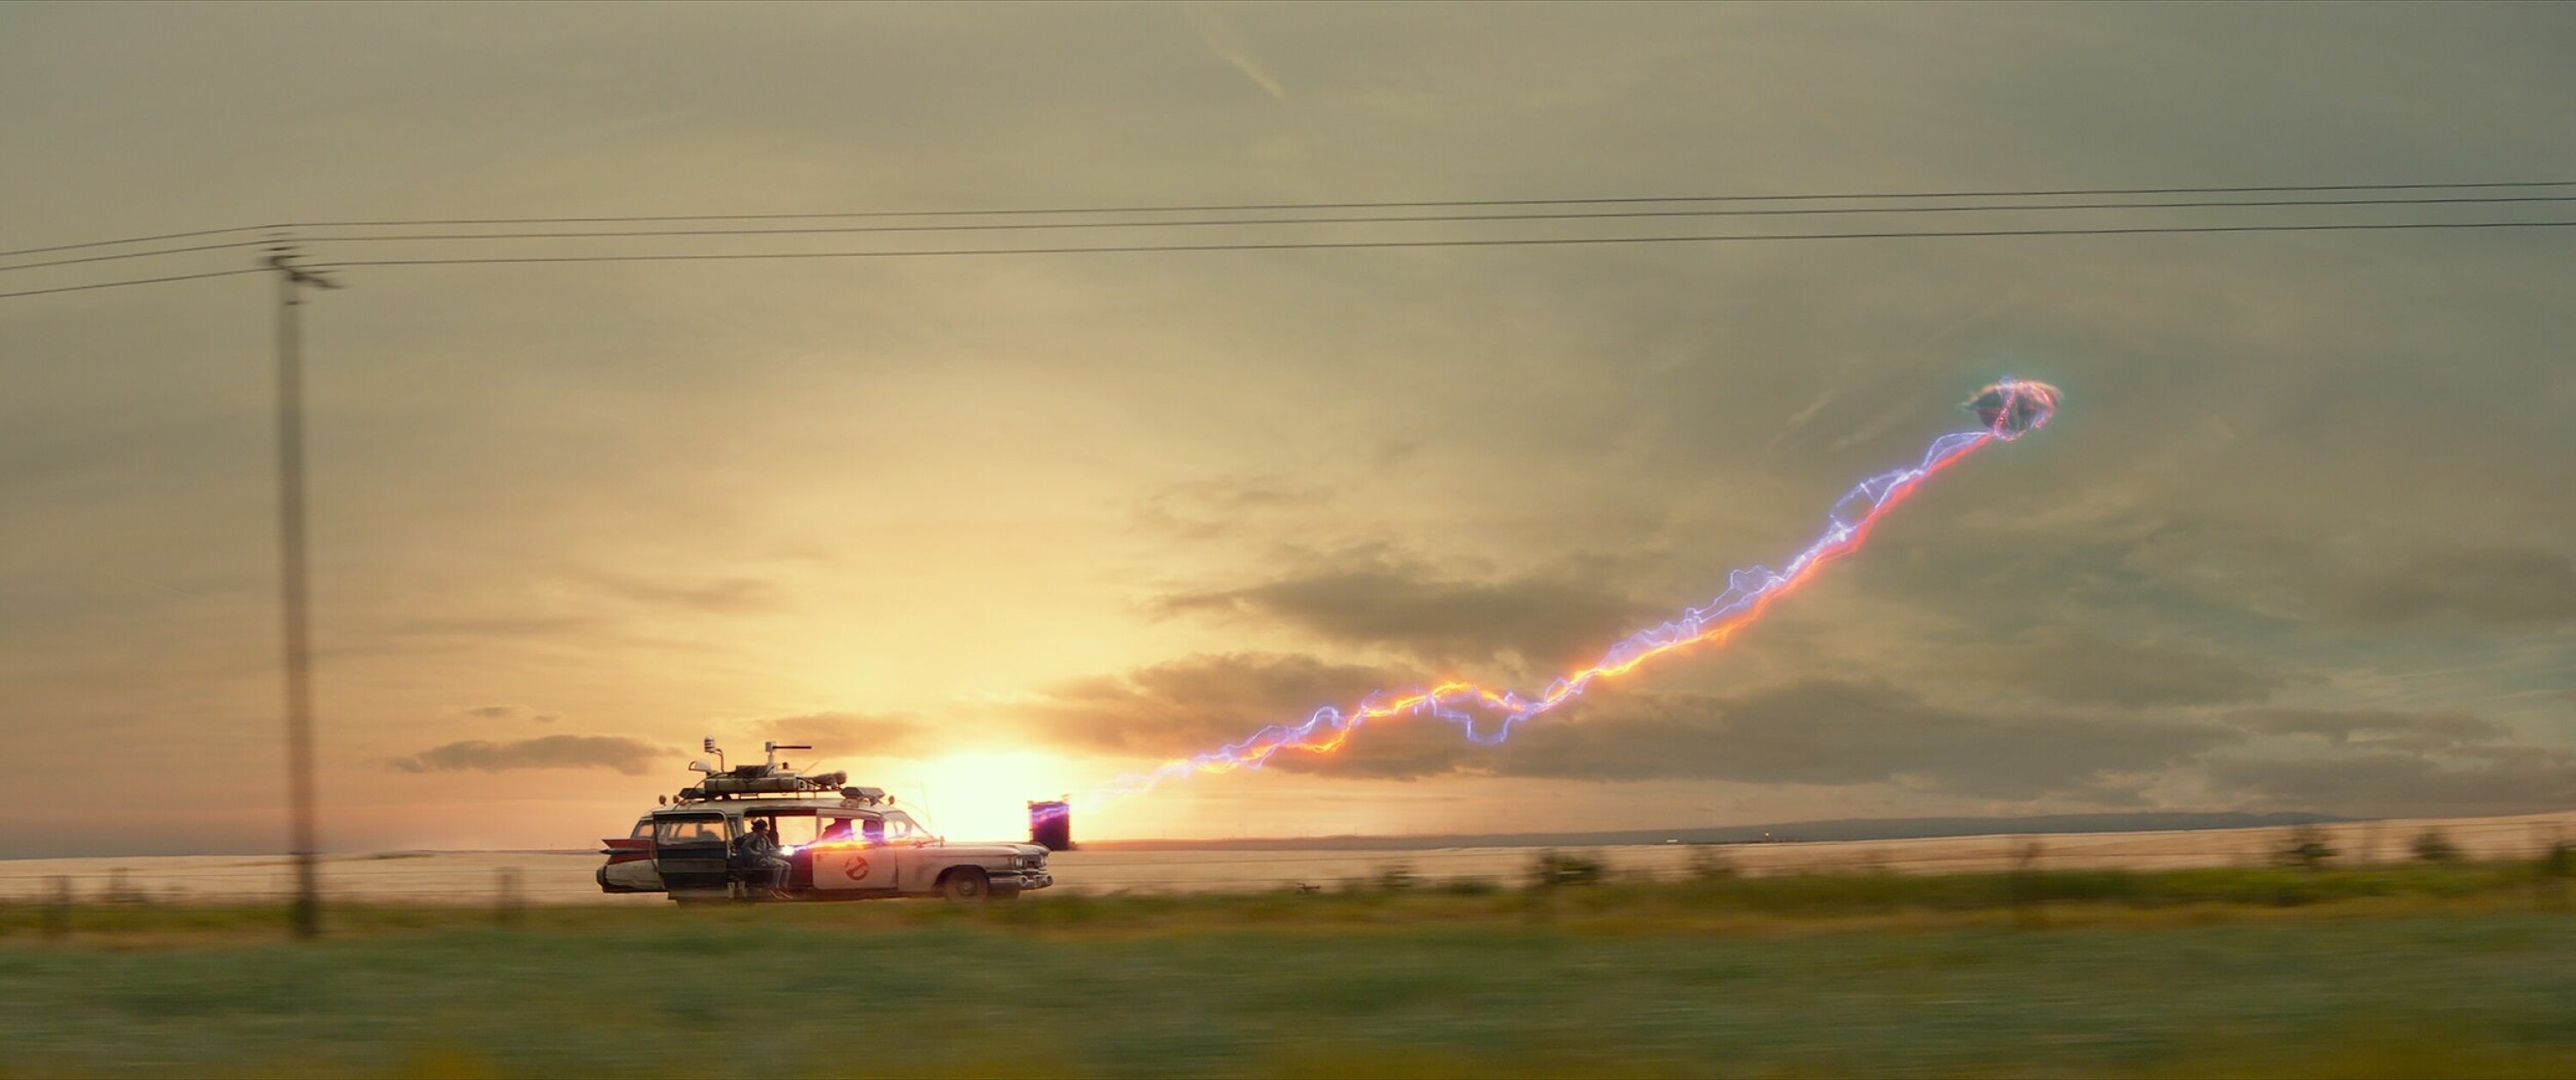 Den klassiske «Ghostbusters-bilen» gjør comeback, og brukes i en av de mest minneverdige scene i filmen